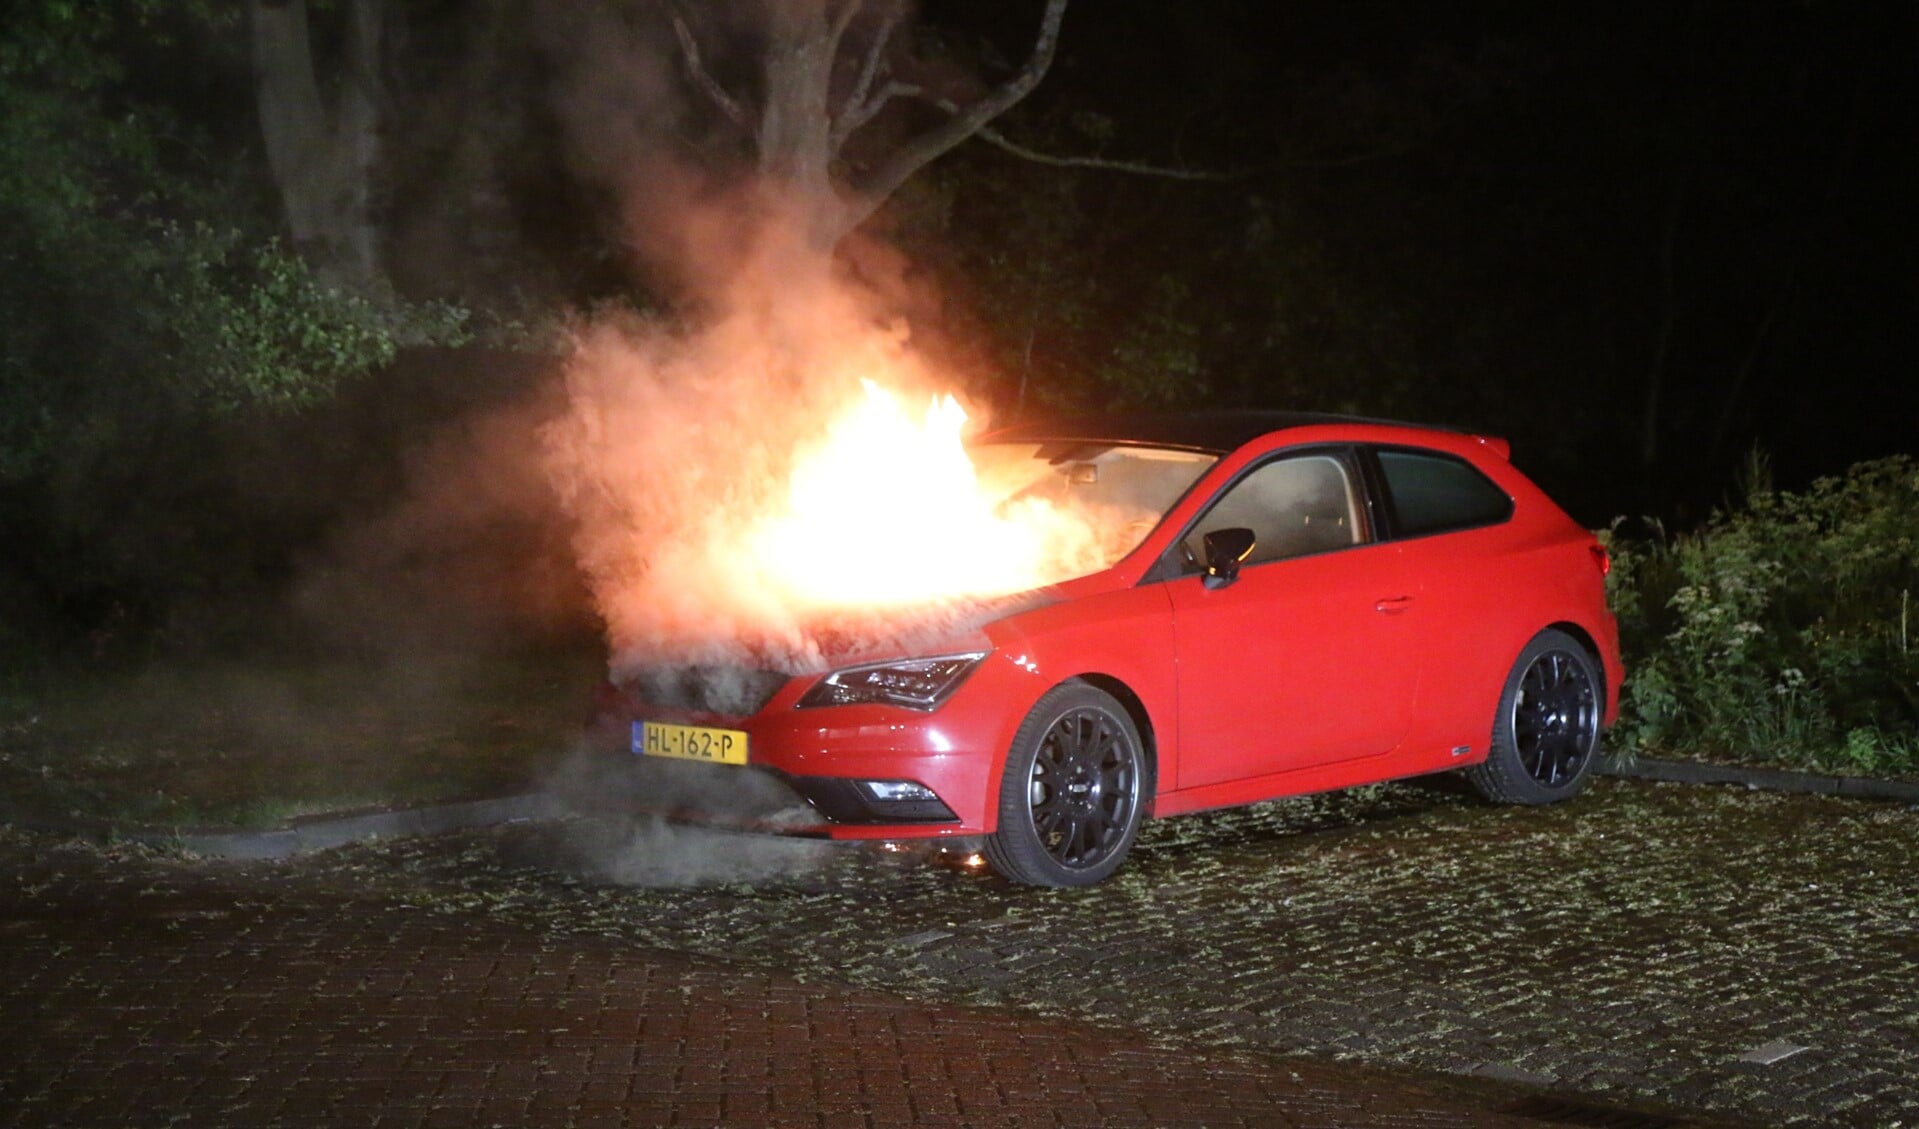 De auto in brand aan de Prins Frederiklaan in Leidschendam vannacht (foto: Nick van Mourik; Regio15).